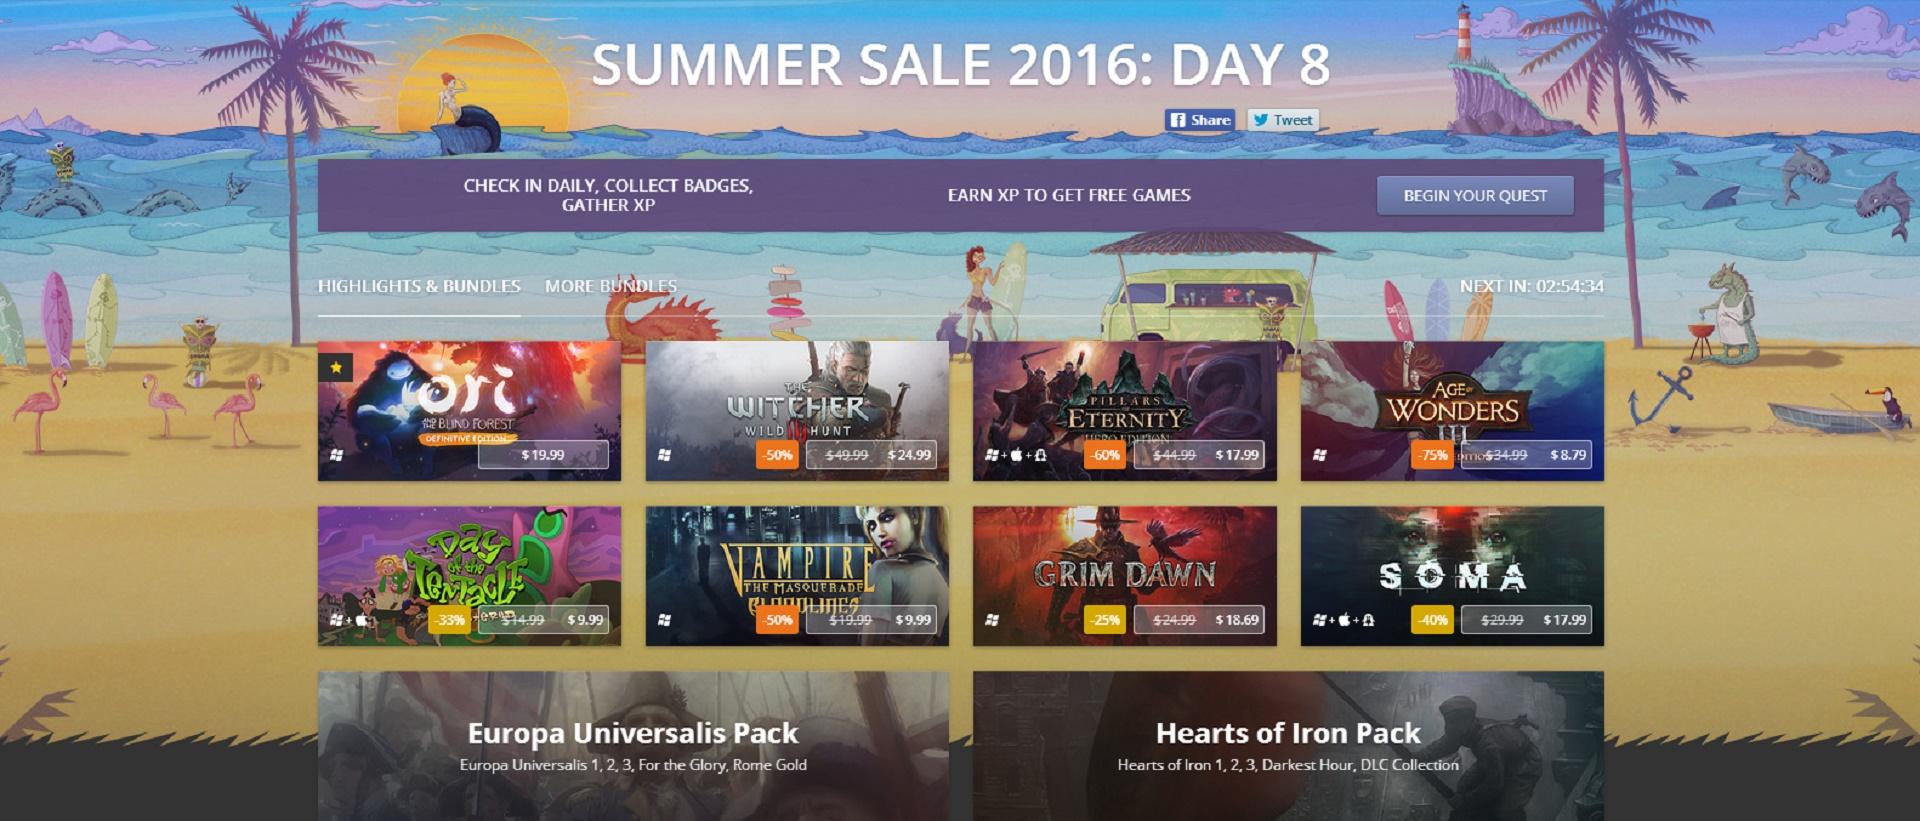 Vui hè cùng Summer Sale 2016 của GOG